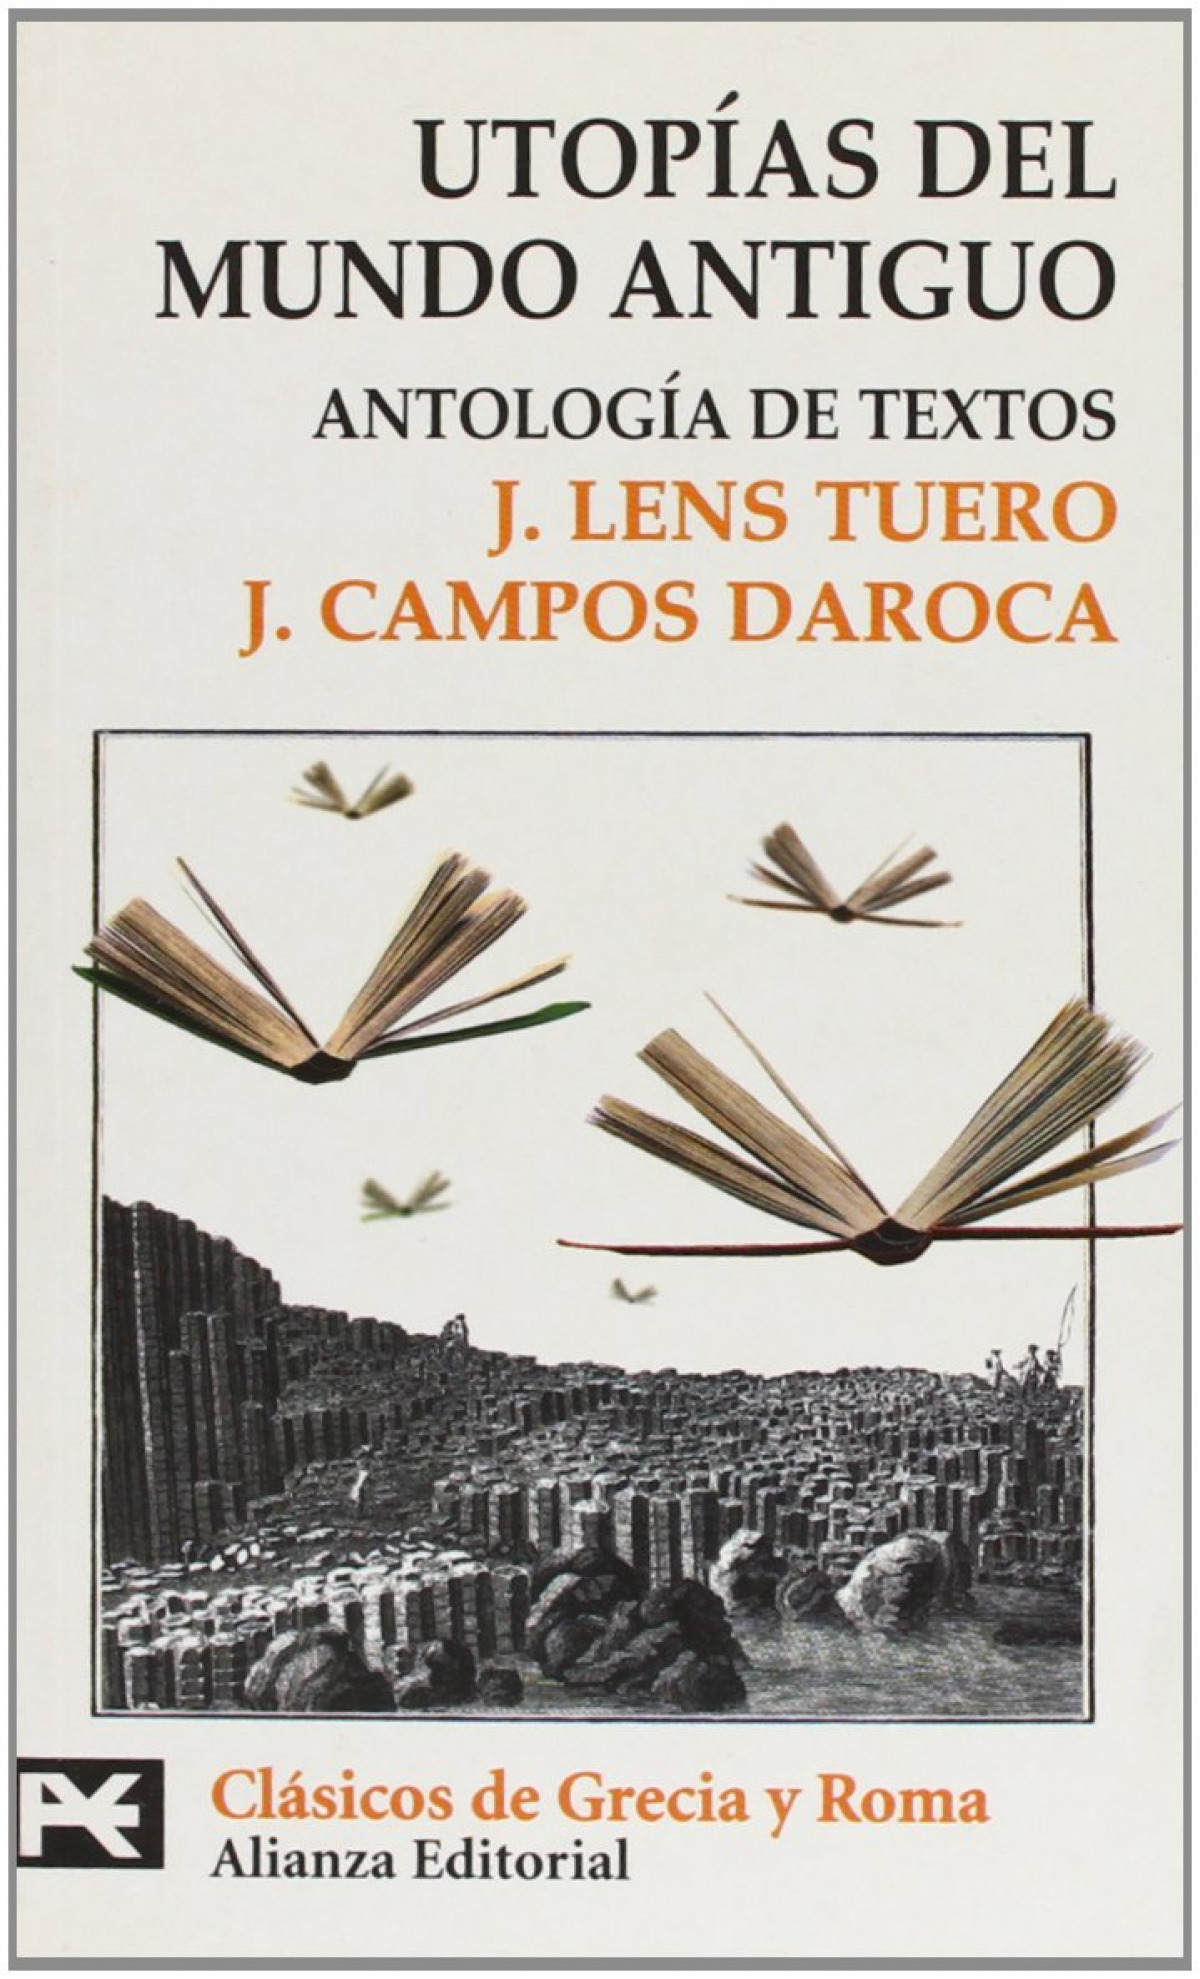 Utopías del mundo antiguo Antología de textos - Lens Tuero, Jesus